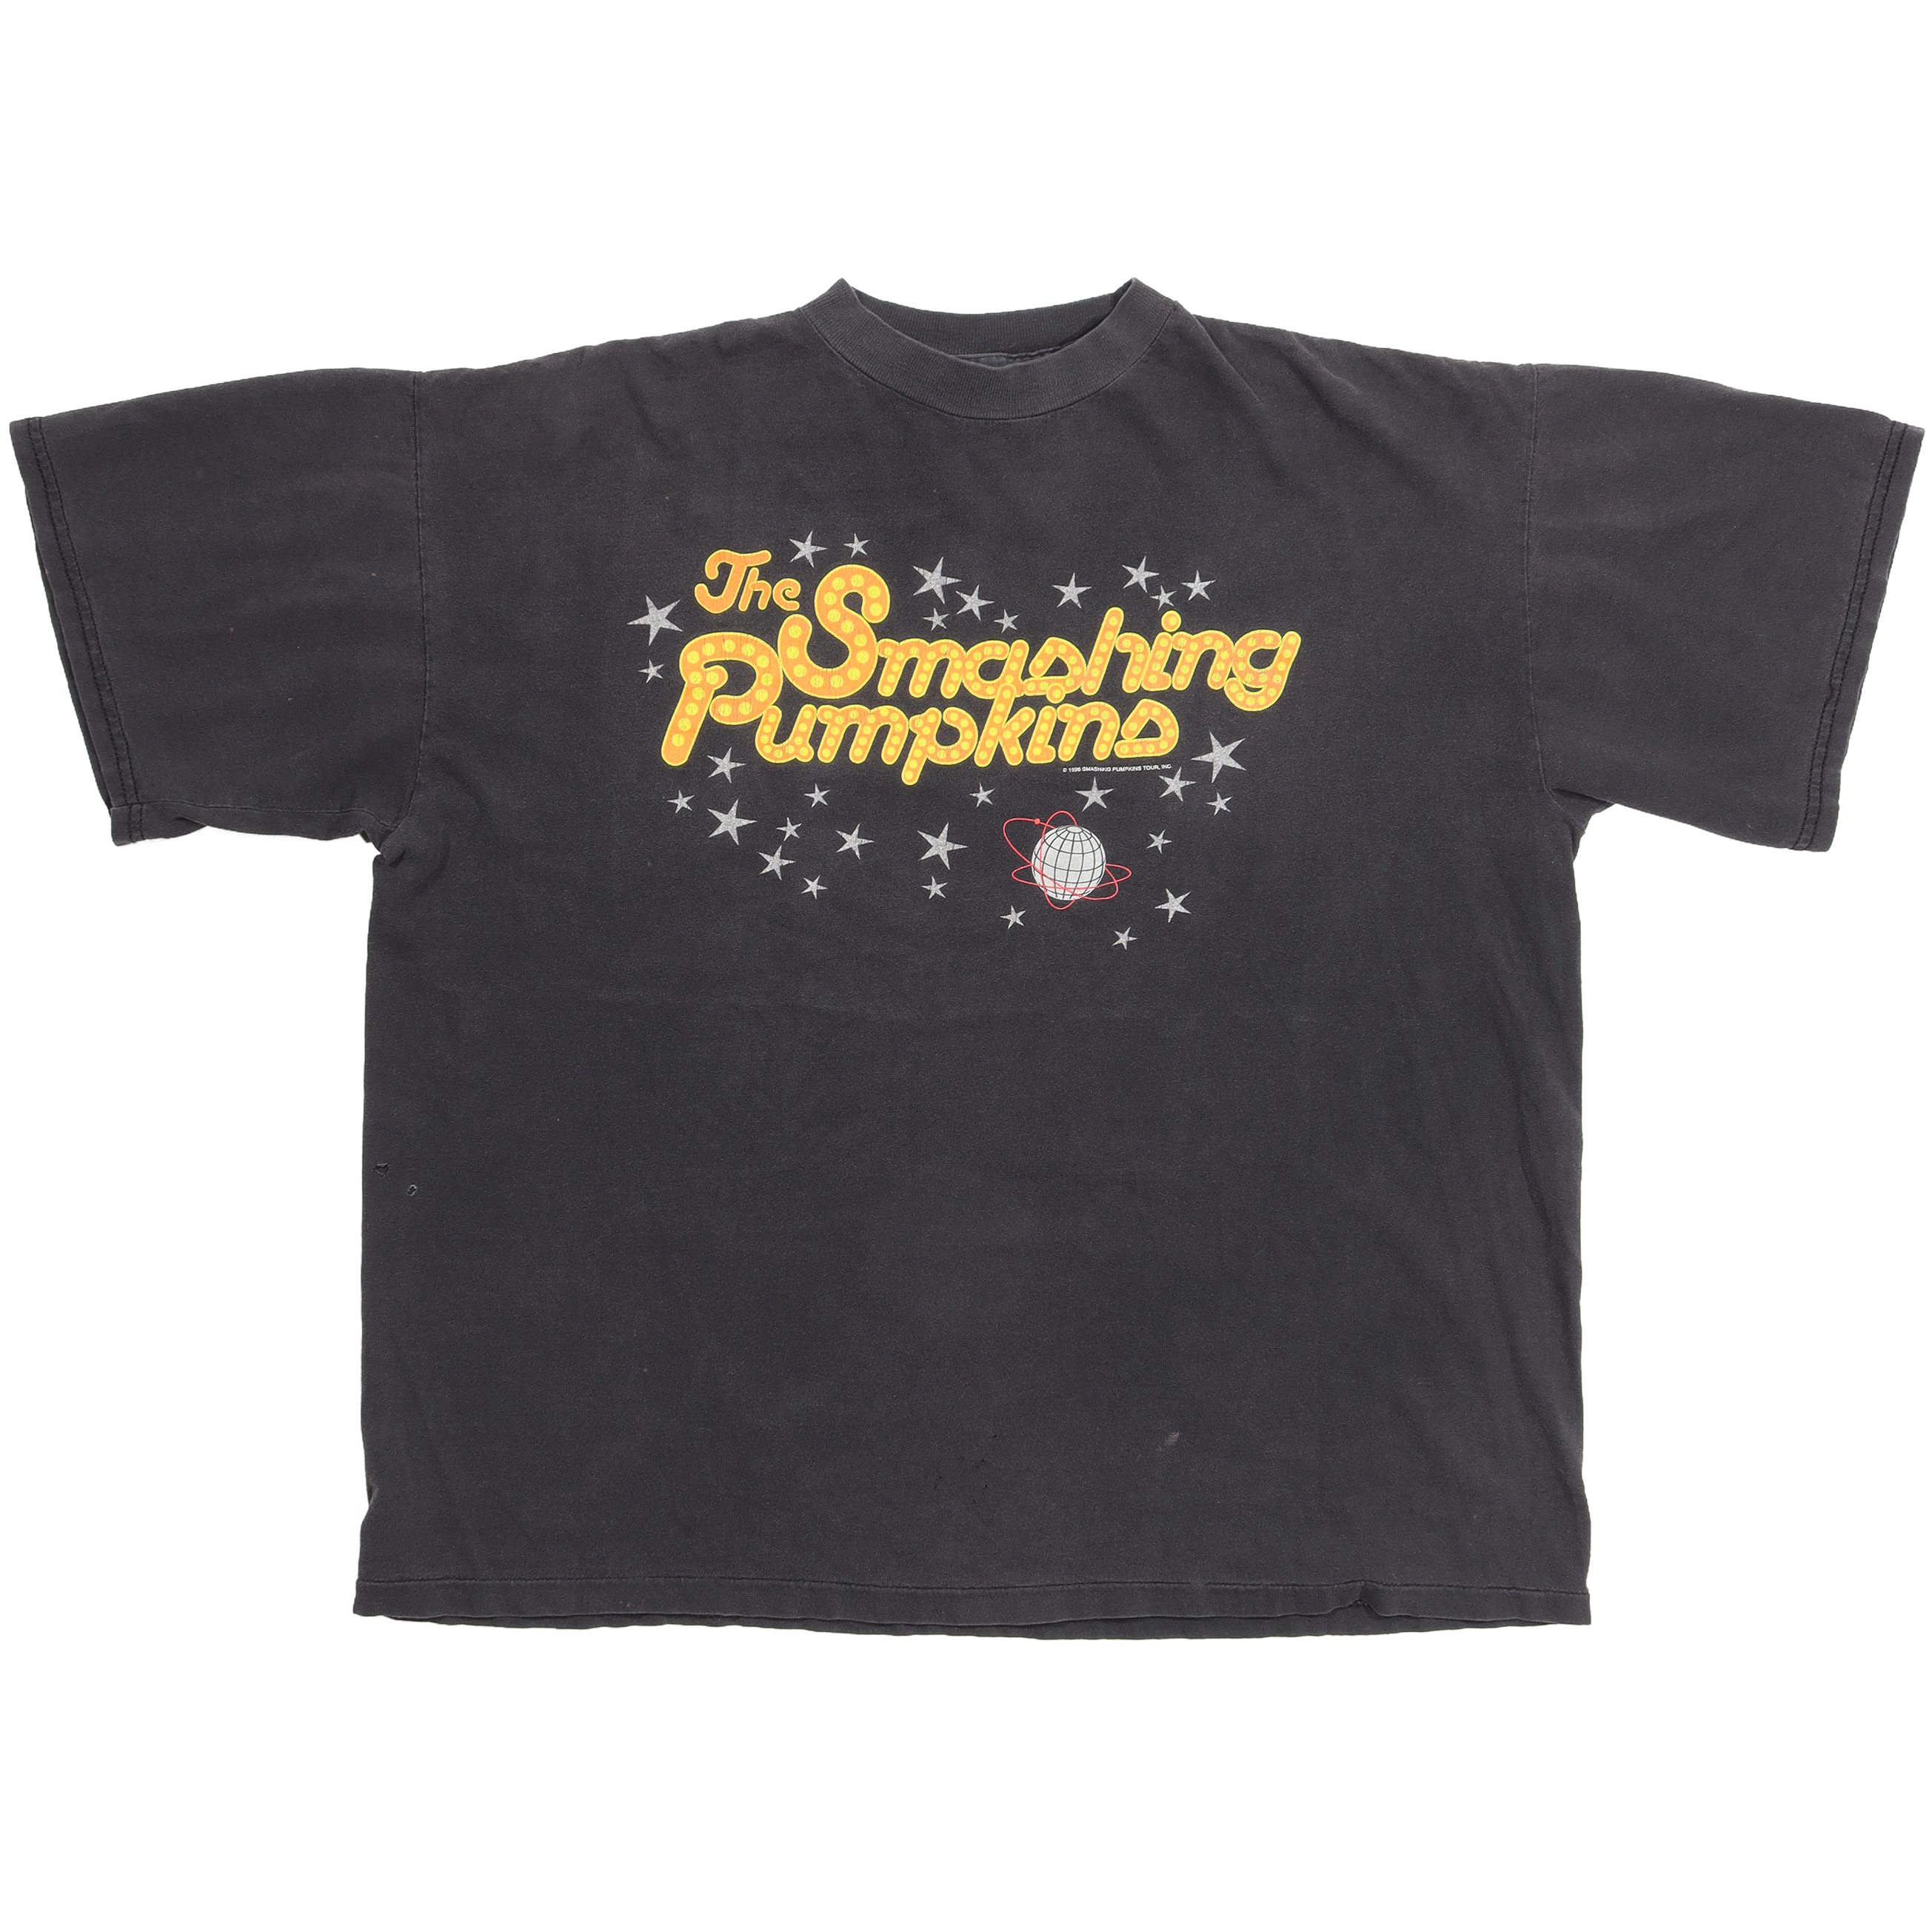 特売 The Smashing Tシャツ【1996s-】 Pumpkins ビンテージ Tシャツ